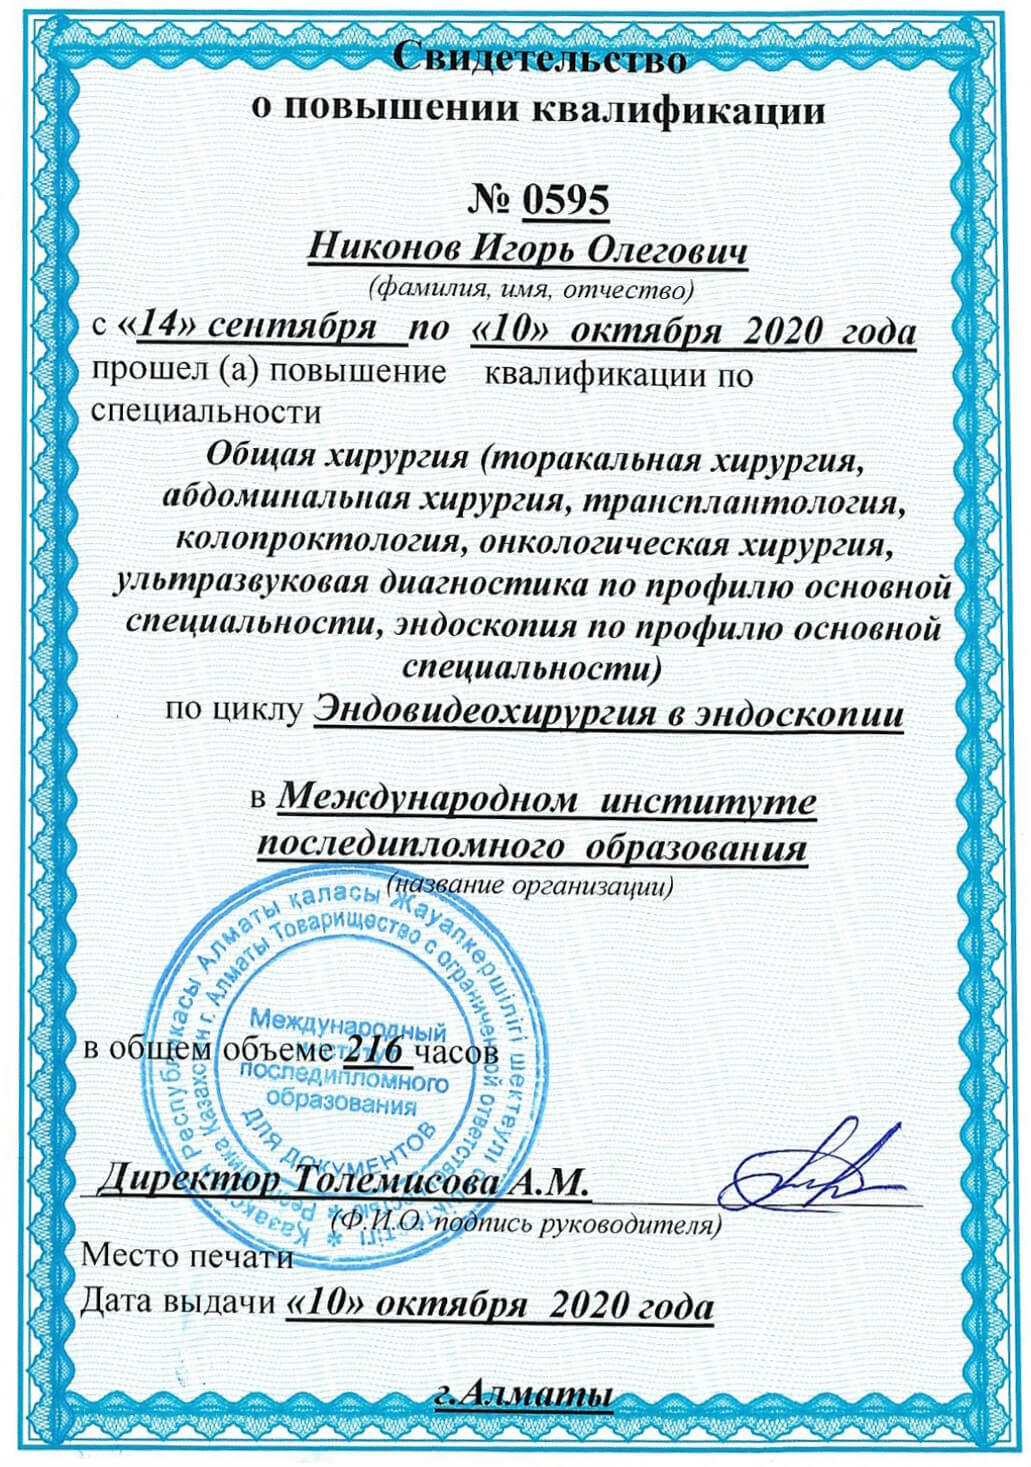 Certificate 28